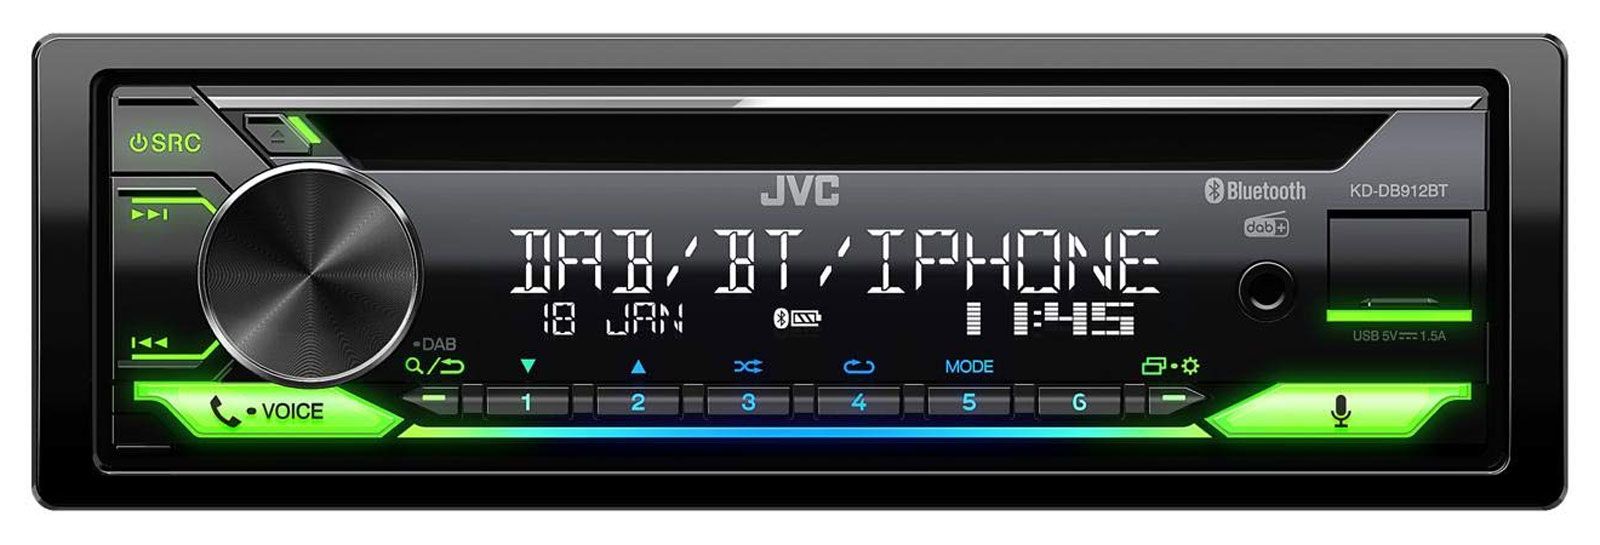 JVC KD-DB912BT - Autoradios 